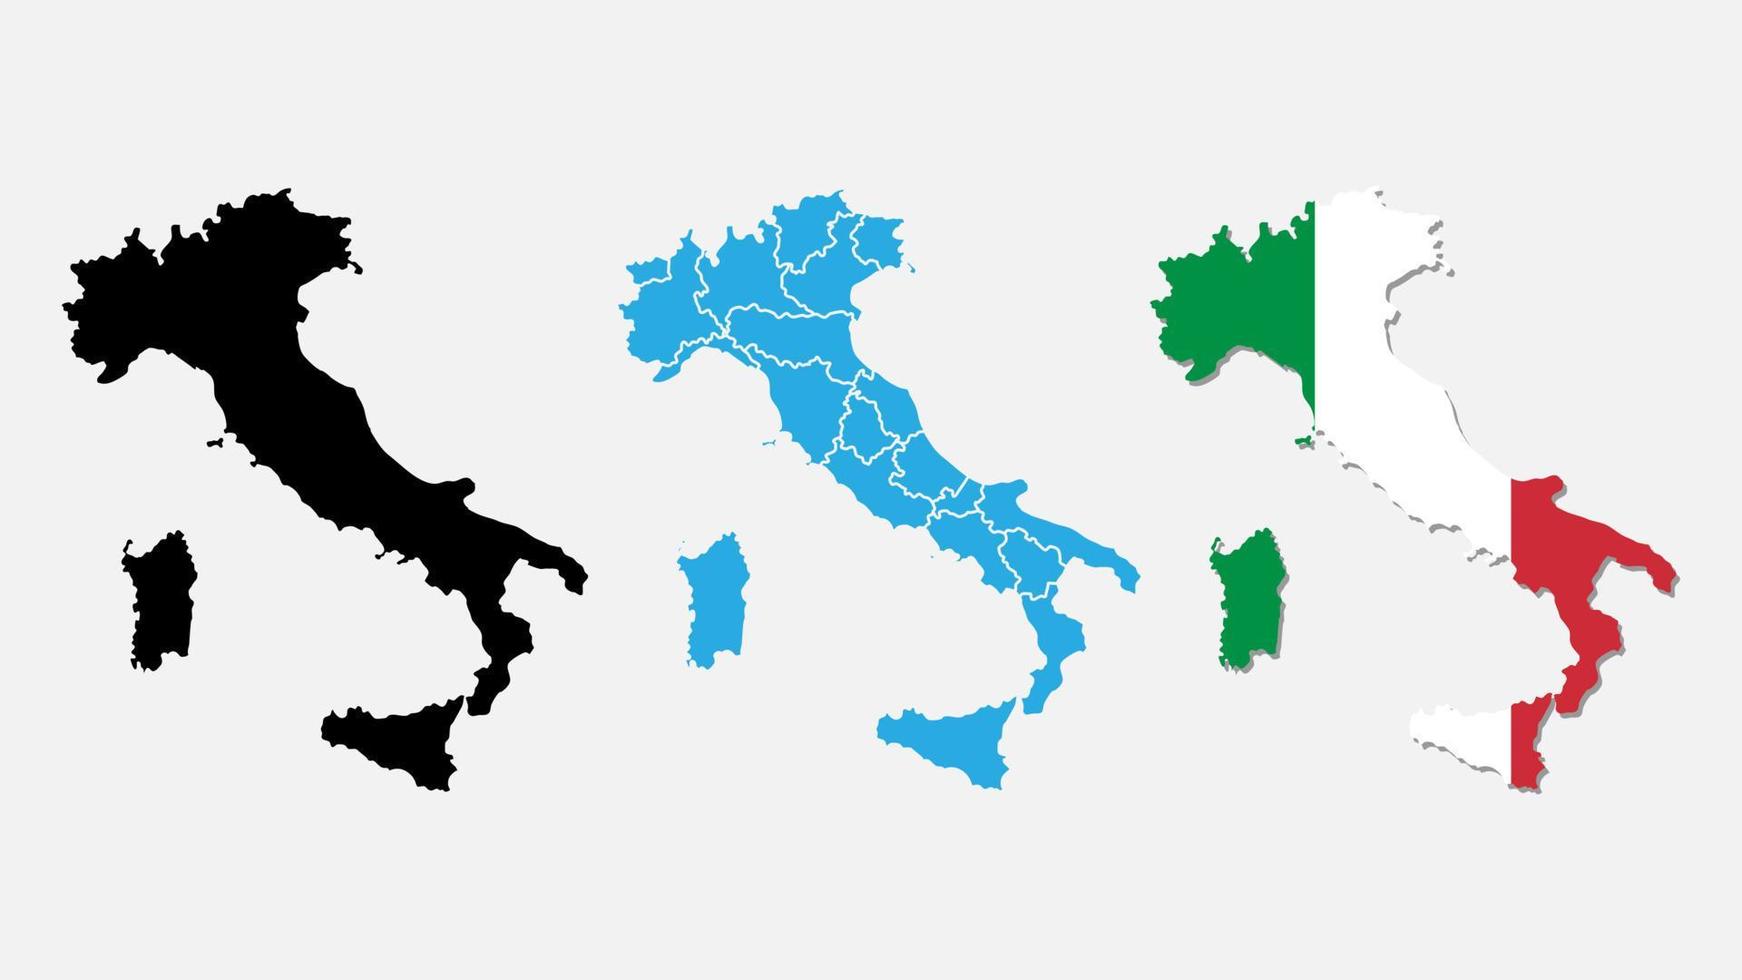 Italien Kartor. Italien Kartor vektorer i en annorlunda Färg. vektor illustration förenklad värld Karta. generaliserat bild av Italien Kartor.